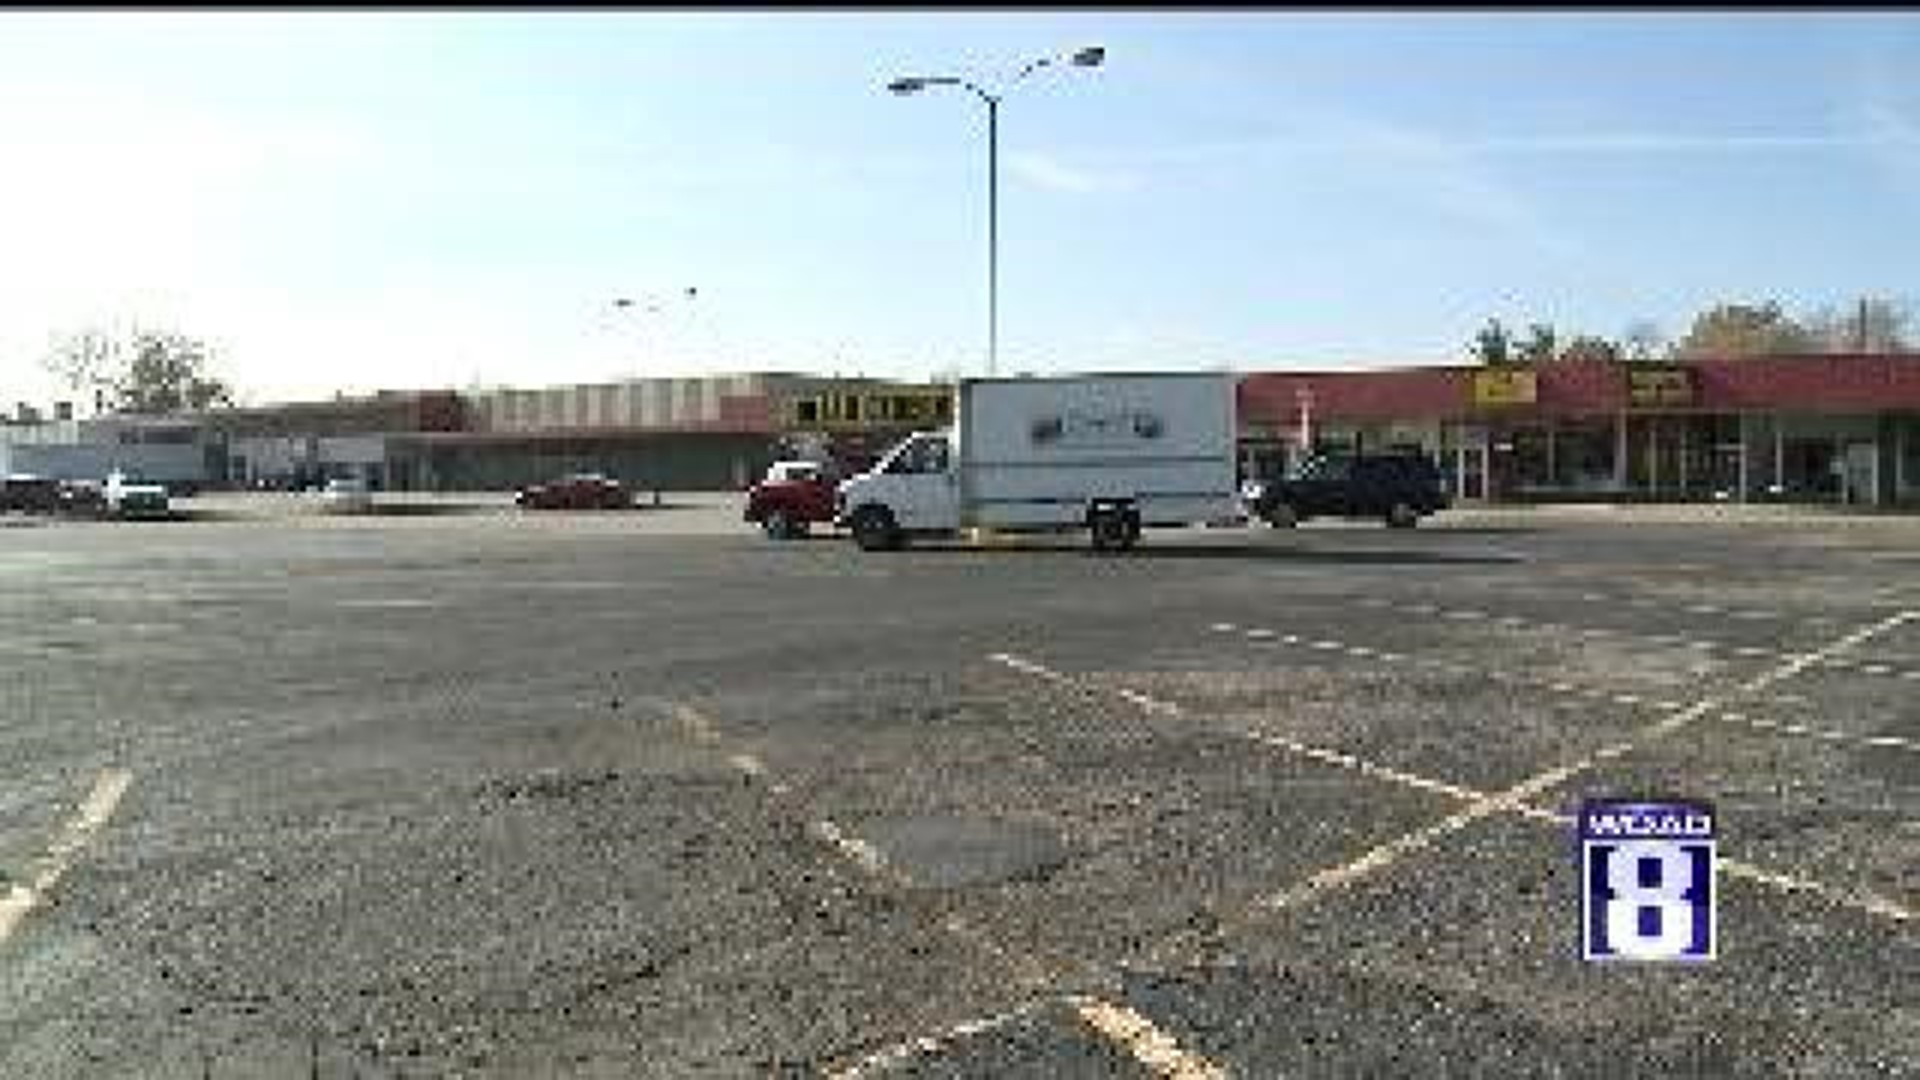 Businesses Prepare For Walmart Development In Rock Island